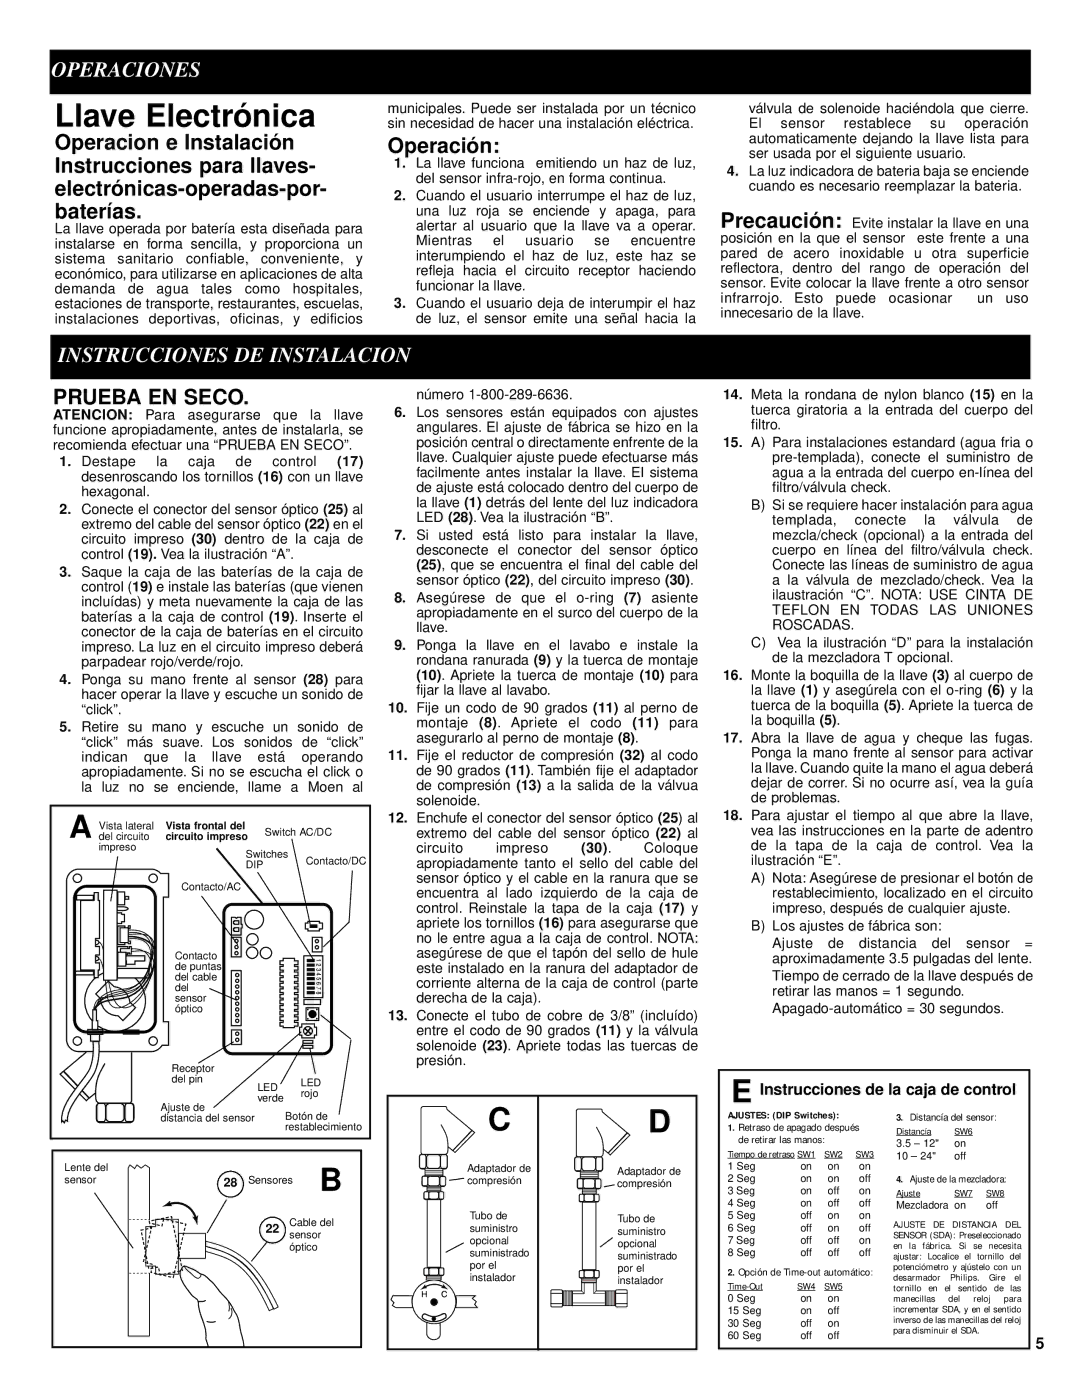 Moen 8304 manual Llave Electrónica, Operaciones, Operación, Instrucciones DE Instalacion, Prueba EN Seco 